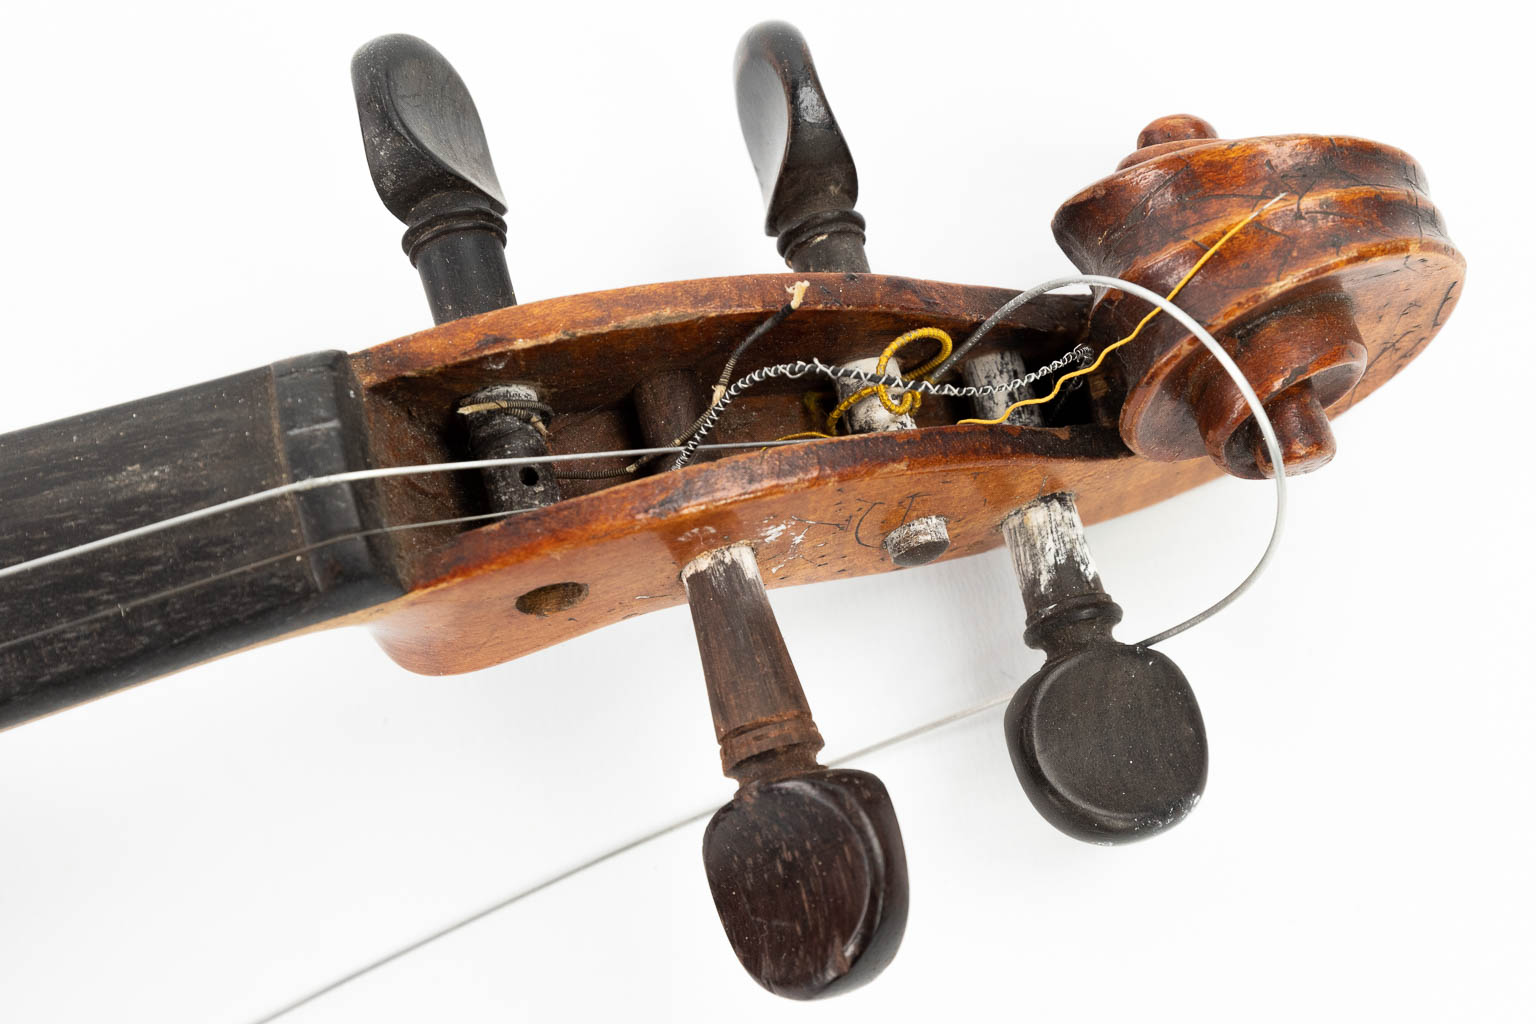 Een collectie van 3 instrumenten: 2 mandolines en een viool, naar een model van Stradivarius 